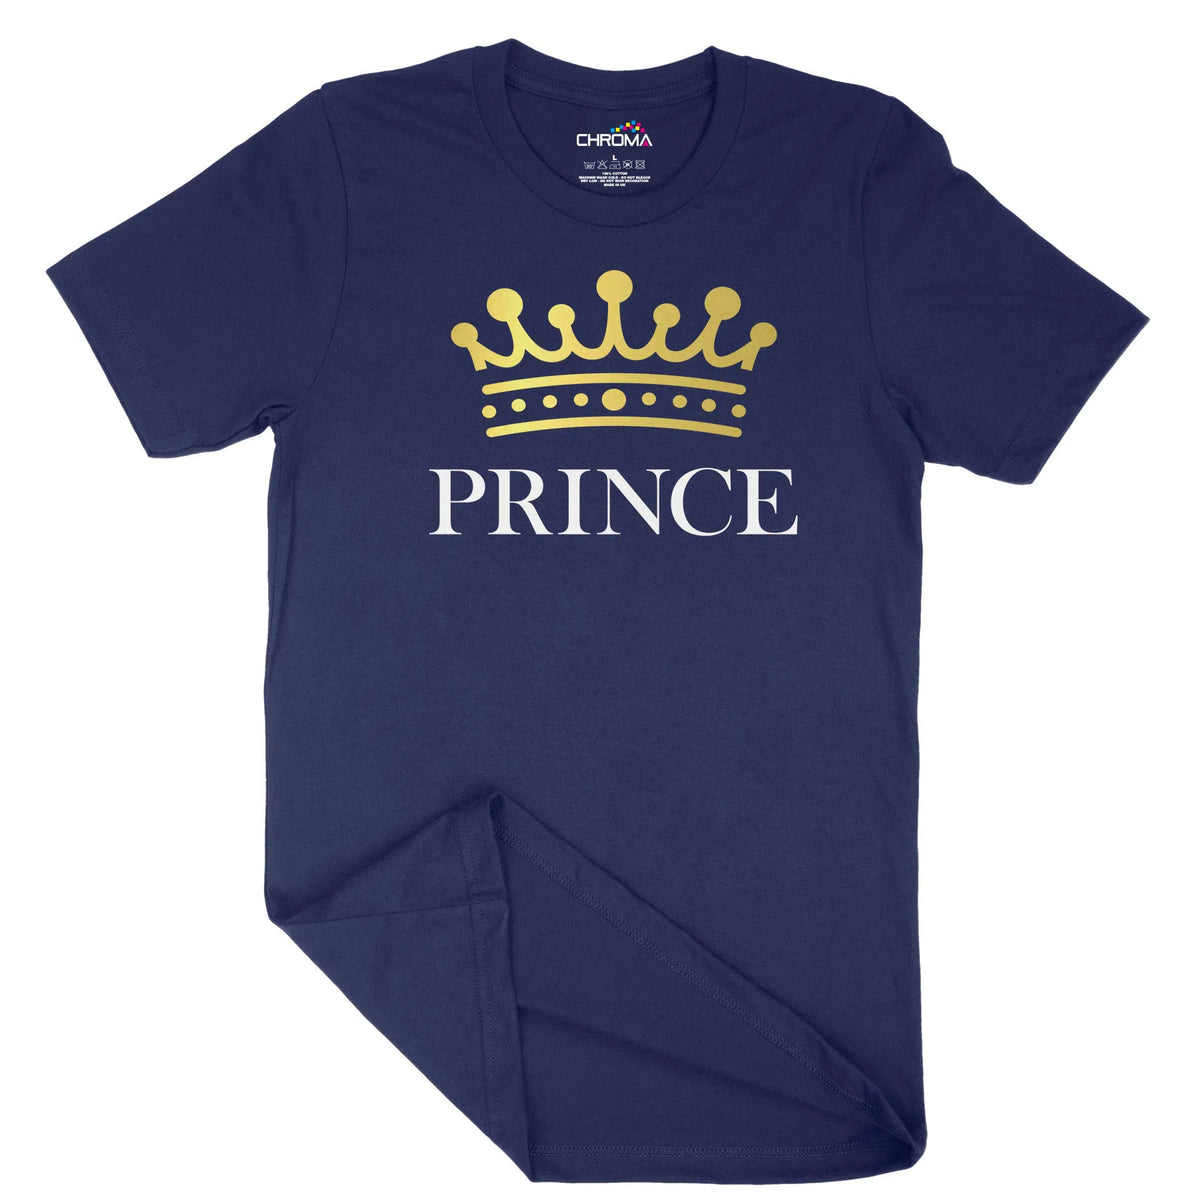 Prince Unisex Adult T-Shirt | Quality Slogan Clothing Chroma Clothing